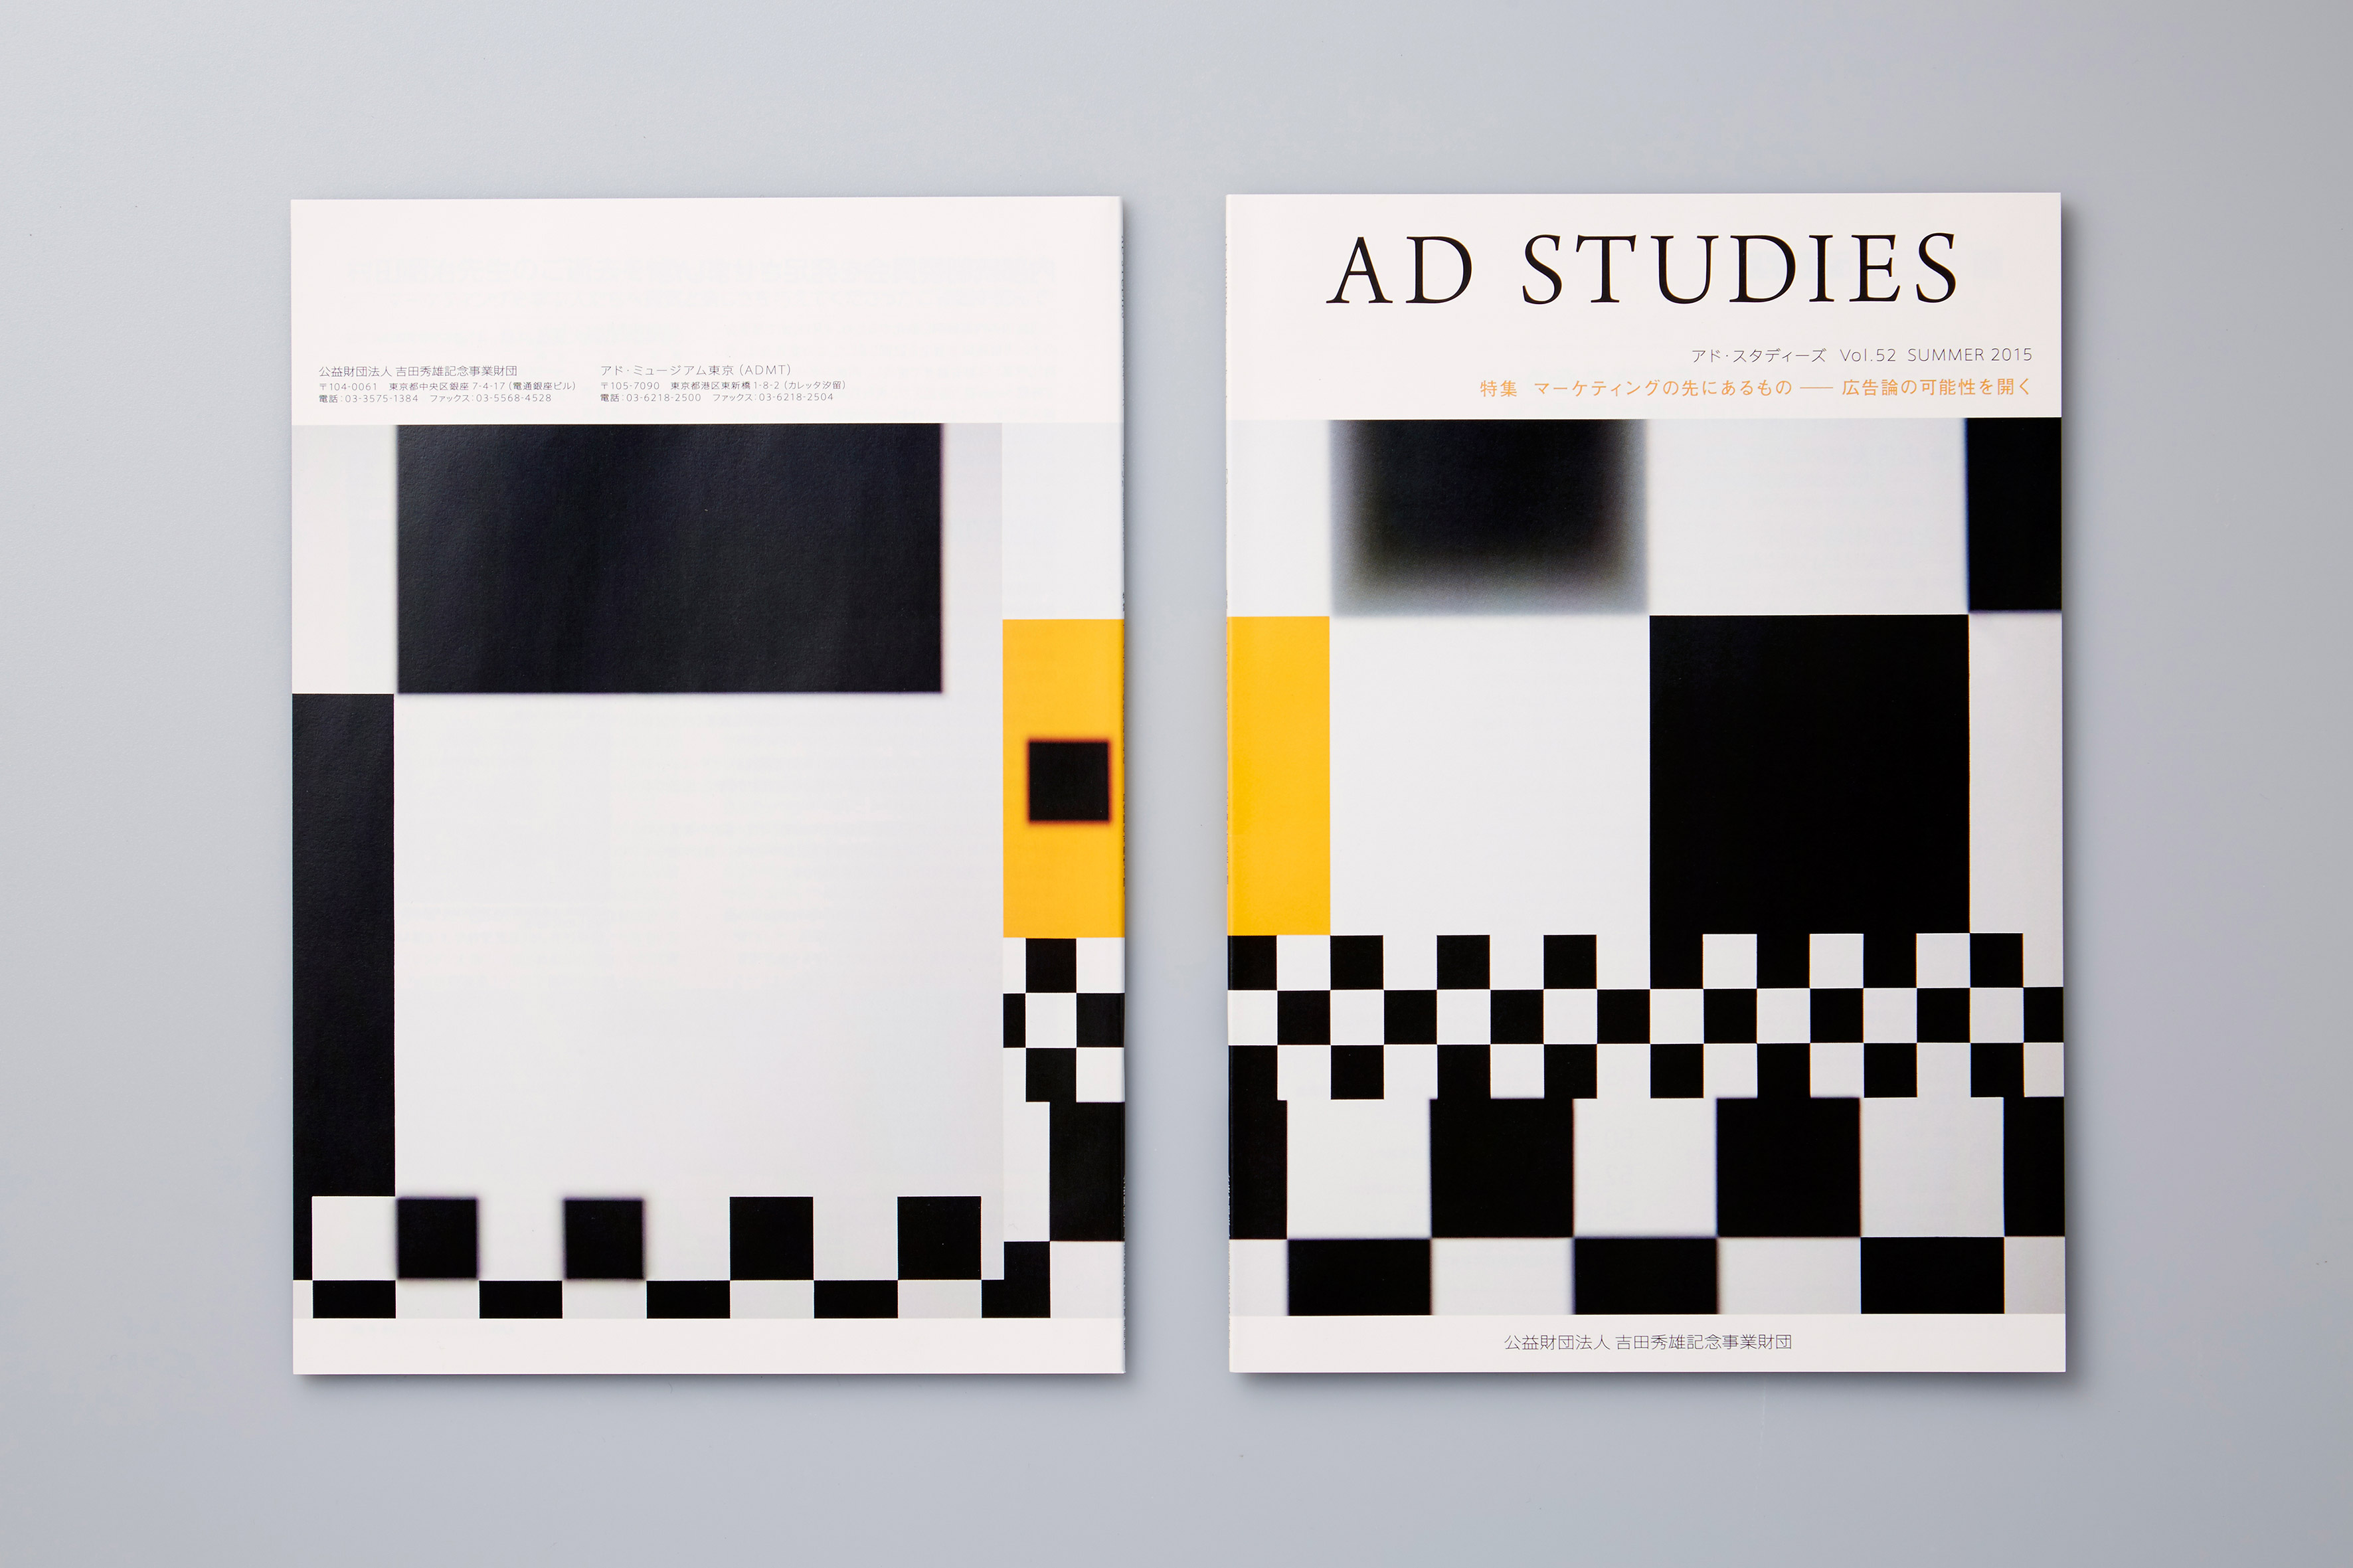 Studies of Graphic Design